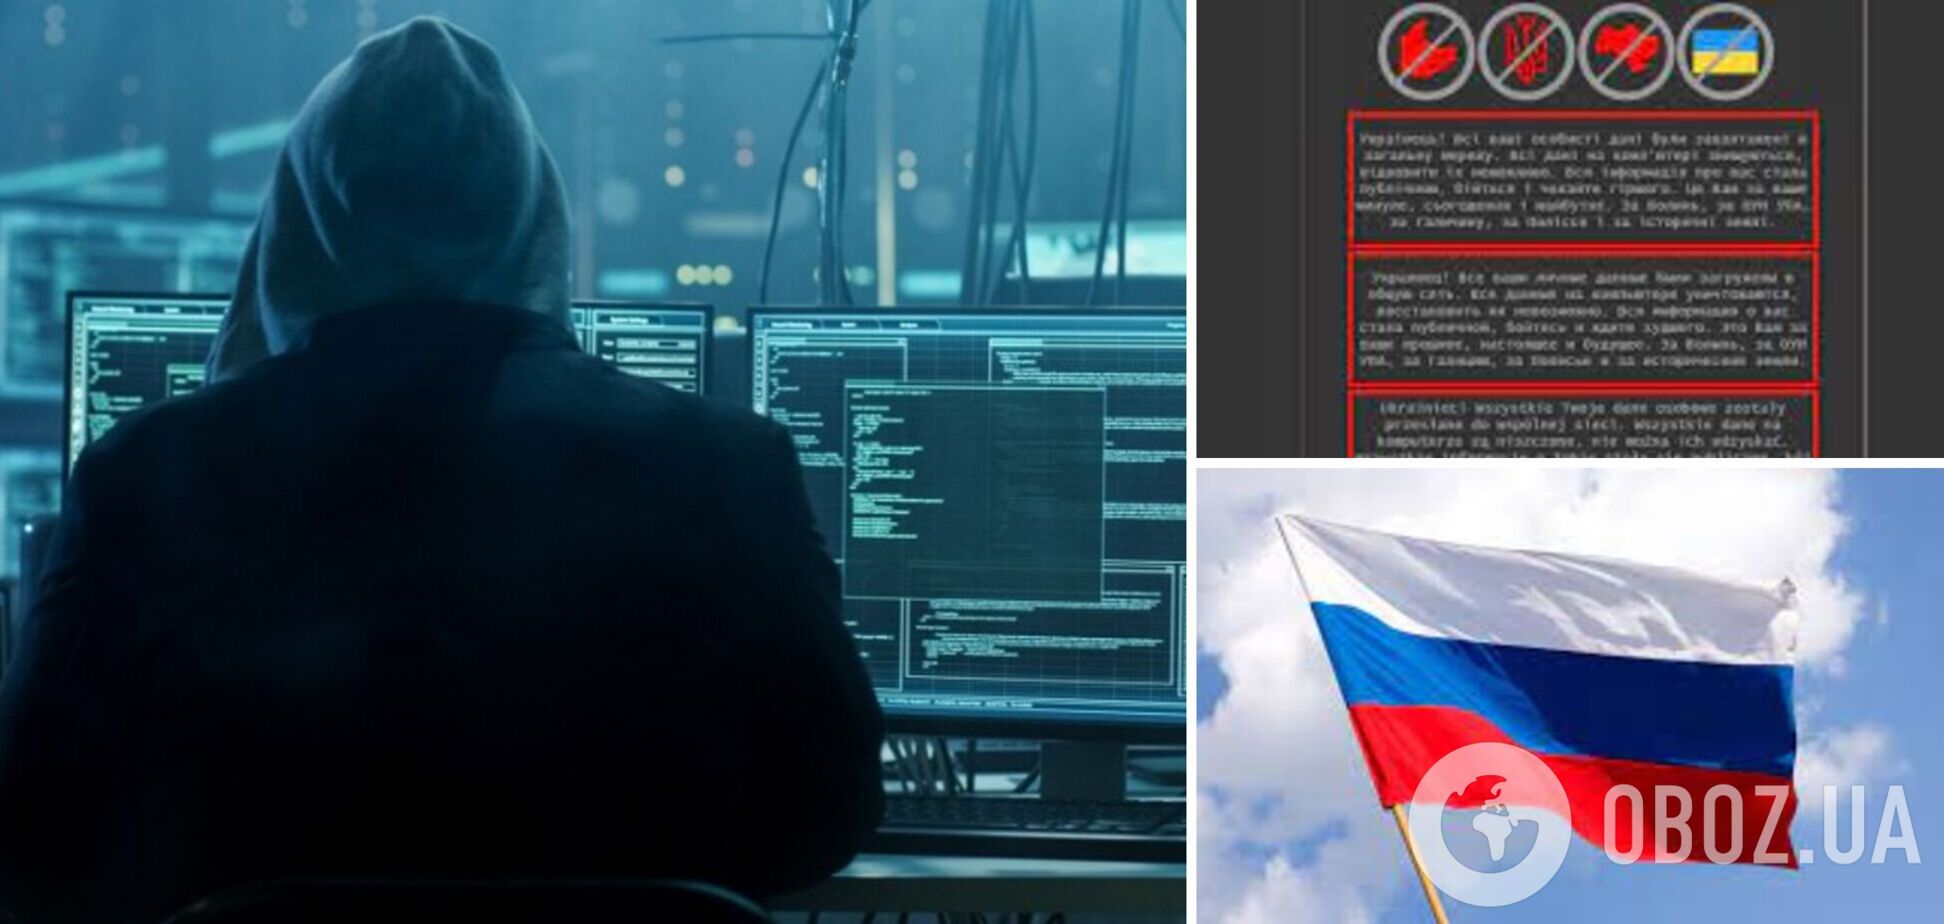 Эксперты нашли российский след в кибератаке на украинские сайты